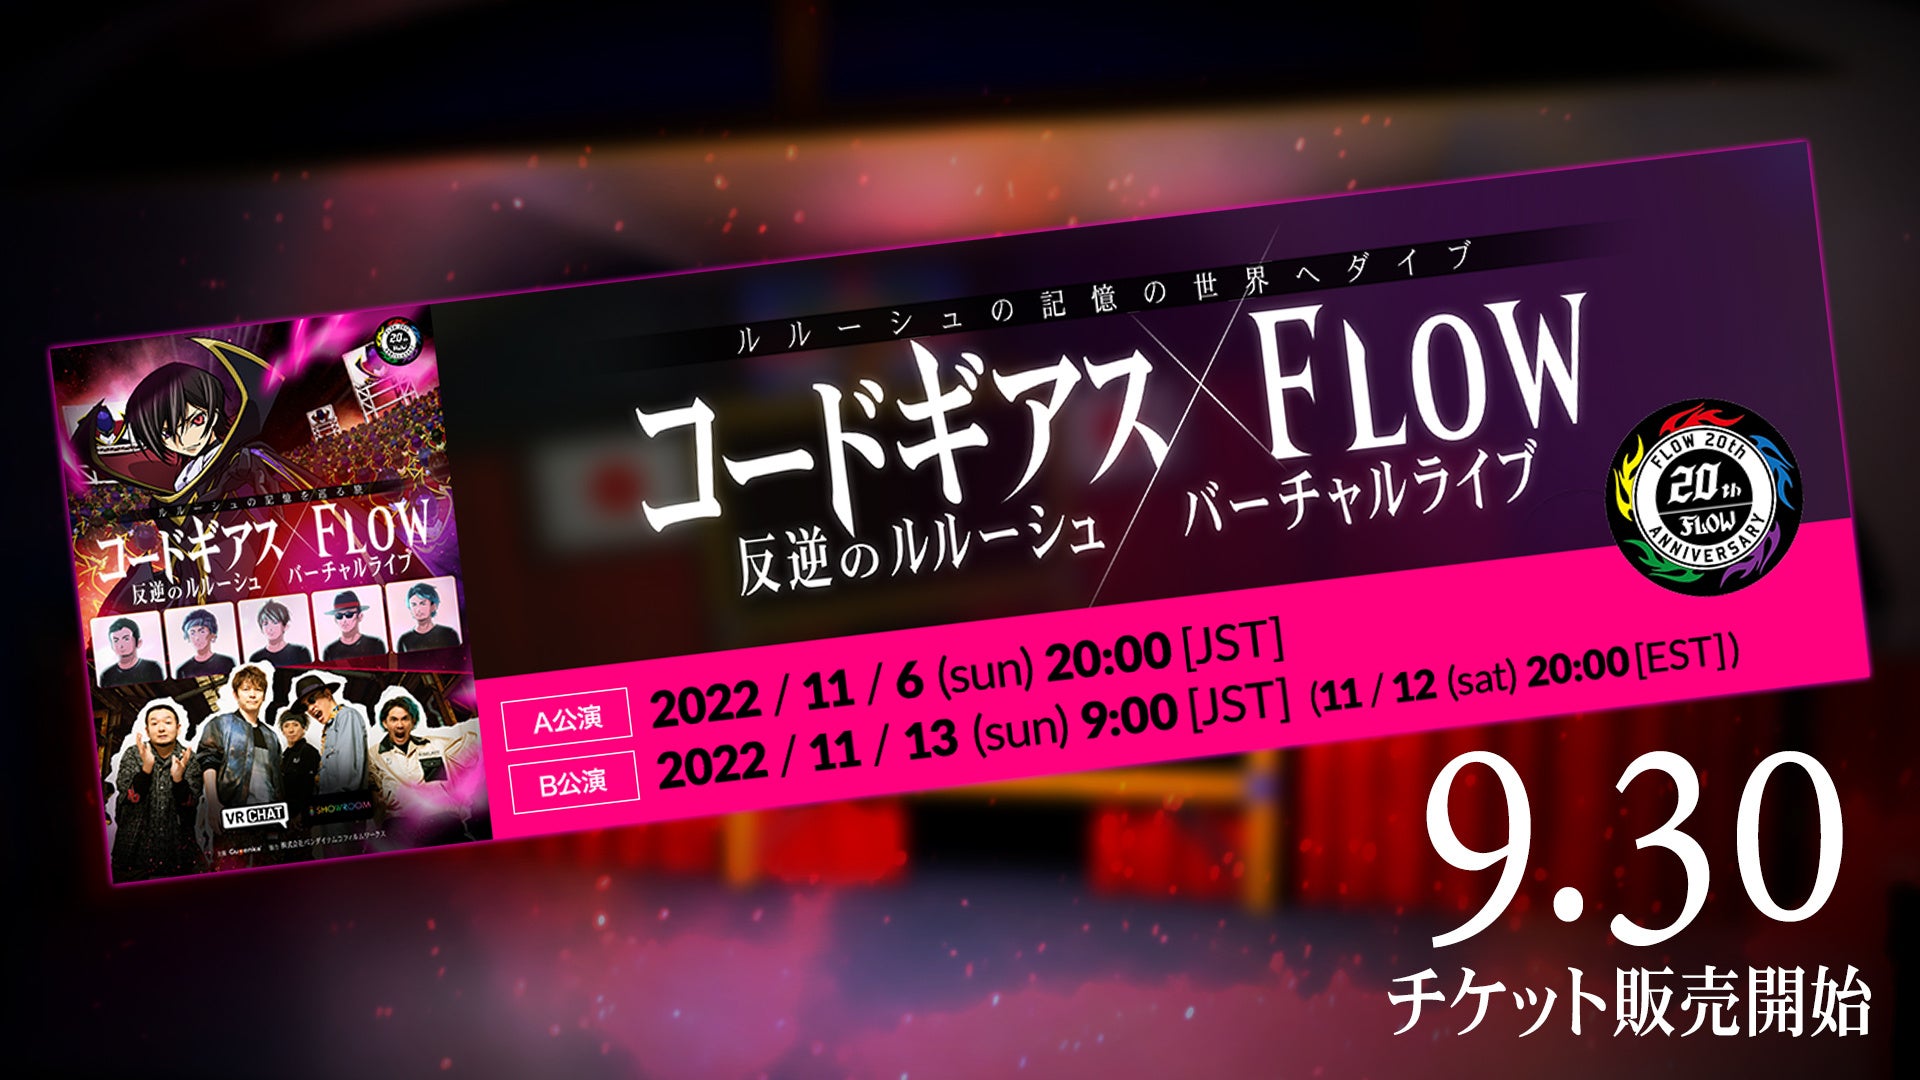 「コードギアス 反逆のルルーシュ×FLOW バーチャルライブ」本日9月30日よりチケット販売開始